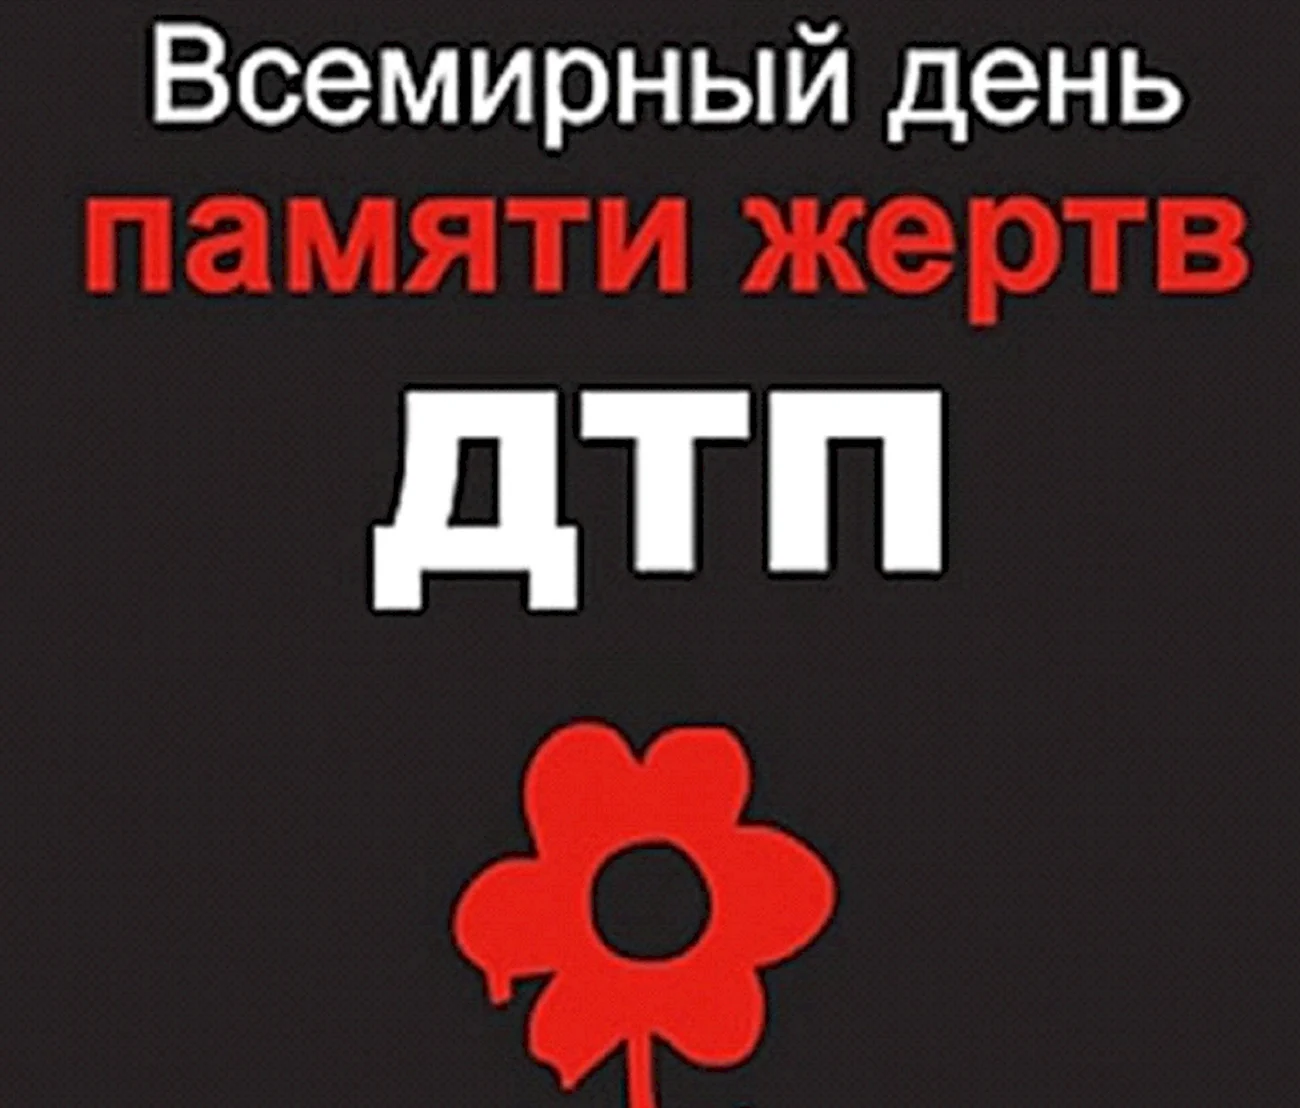 День памяти жертв ДТП красный цветок. Поздравление